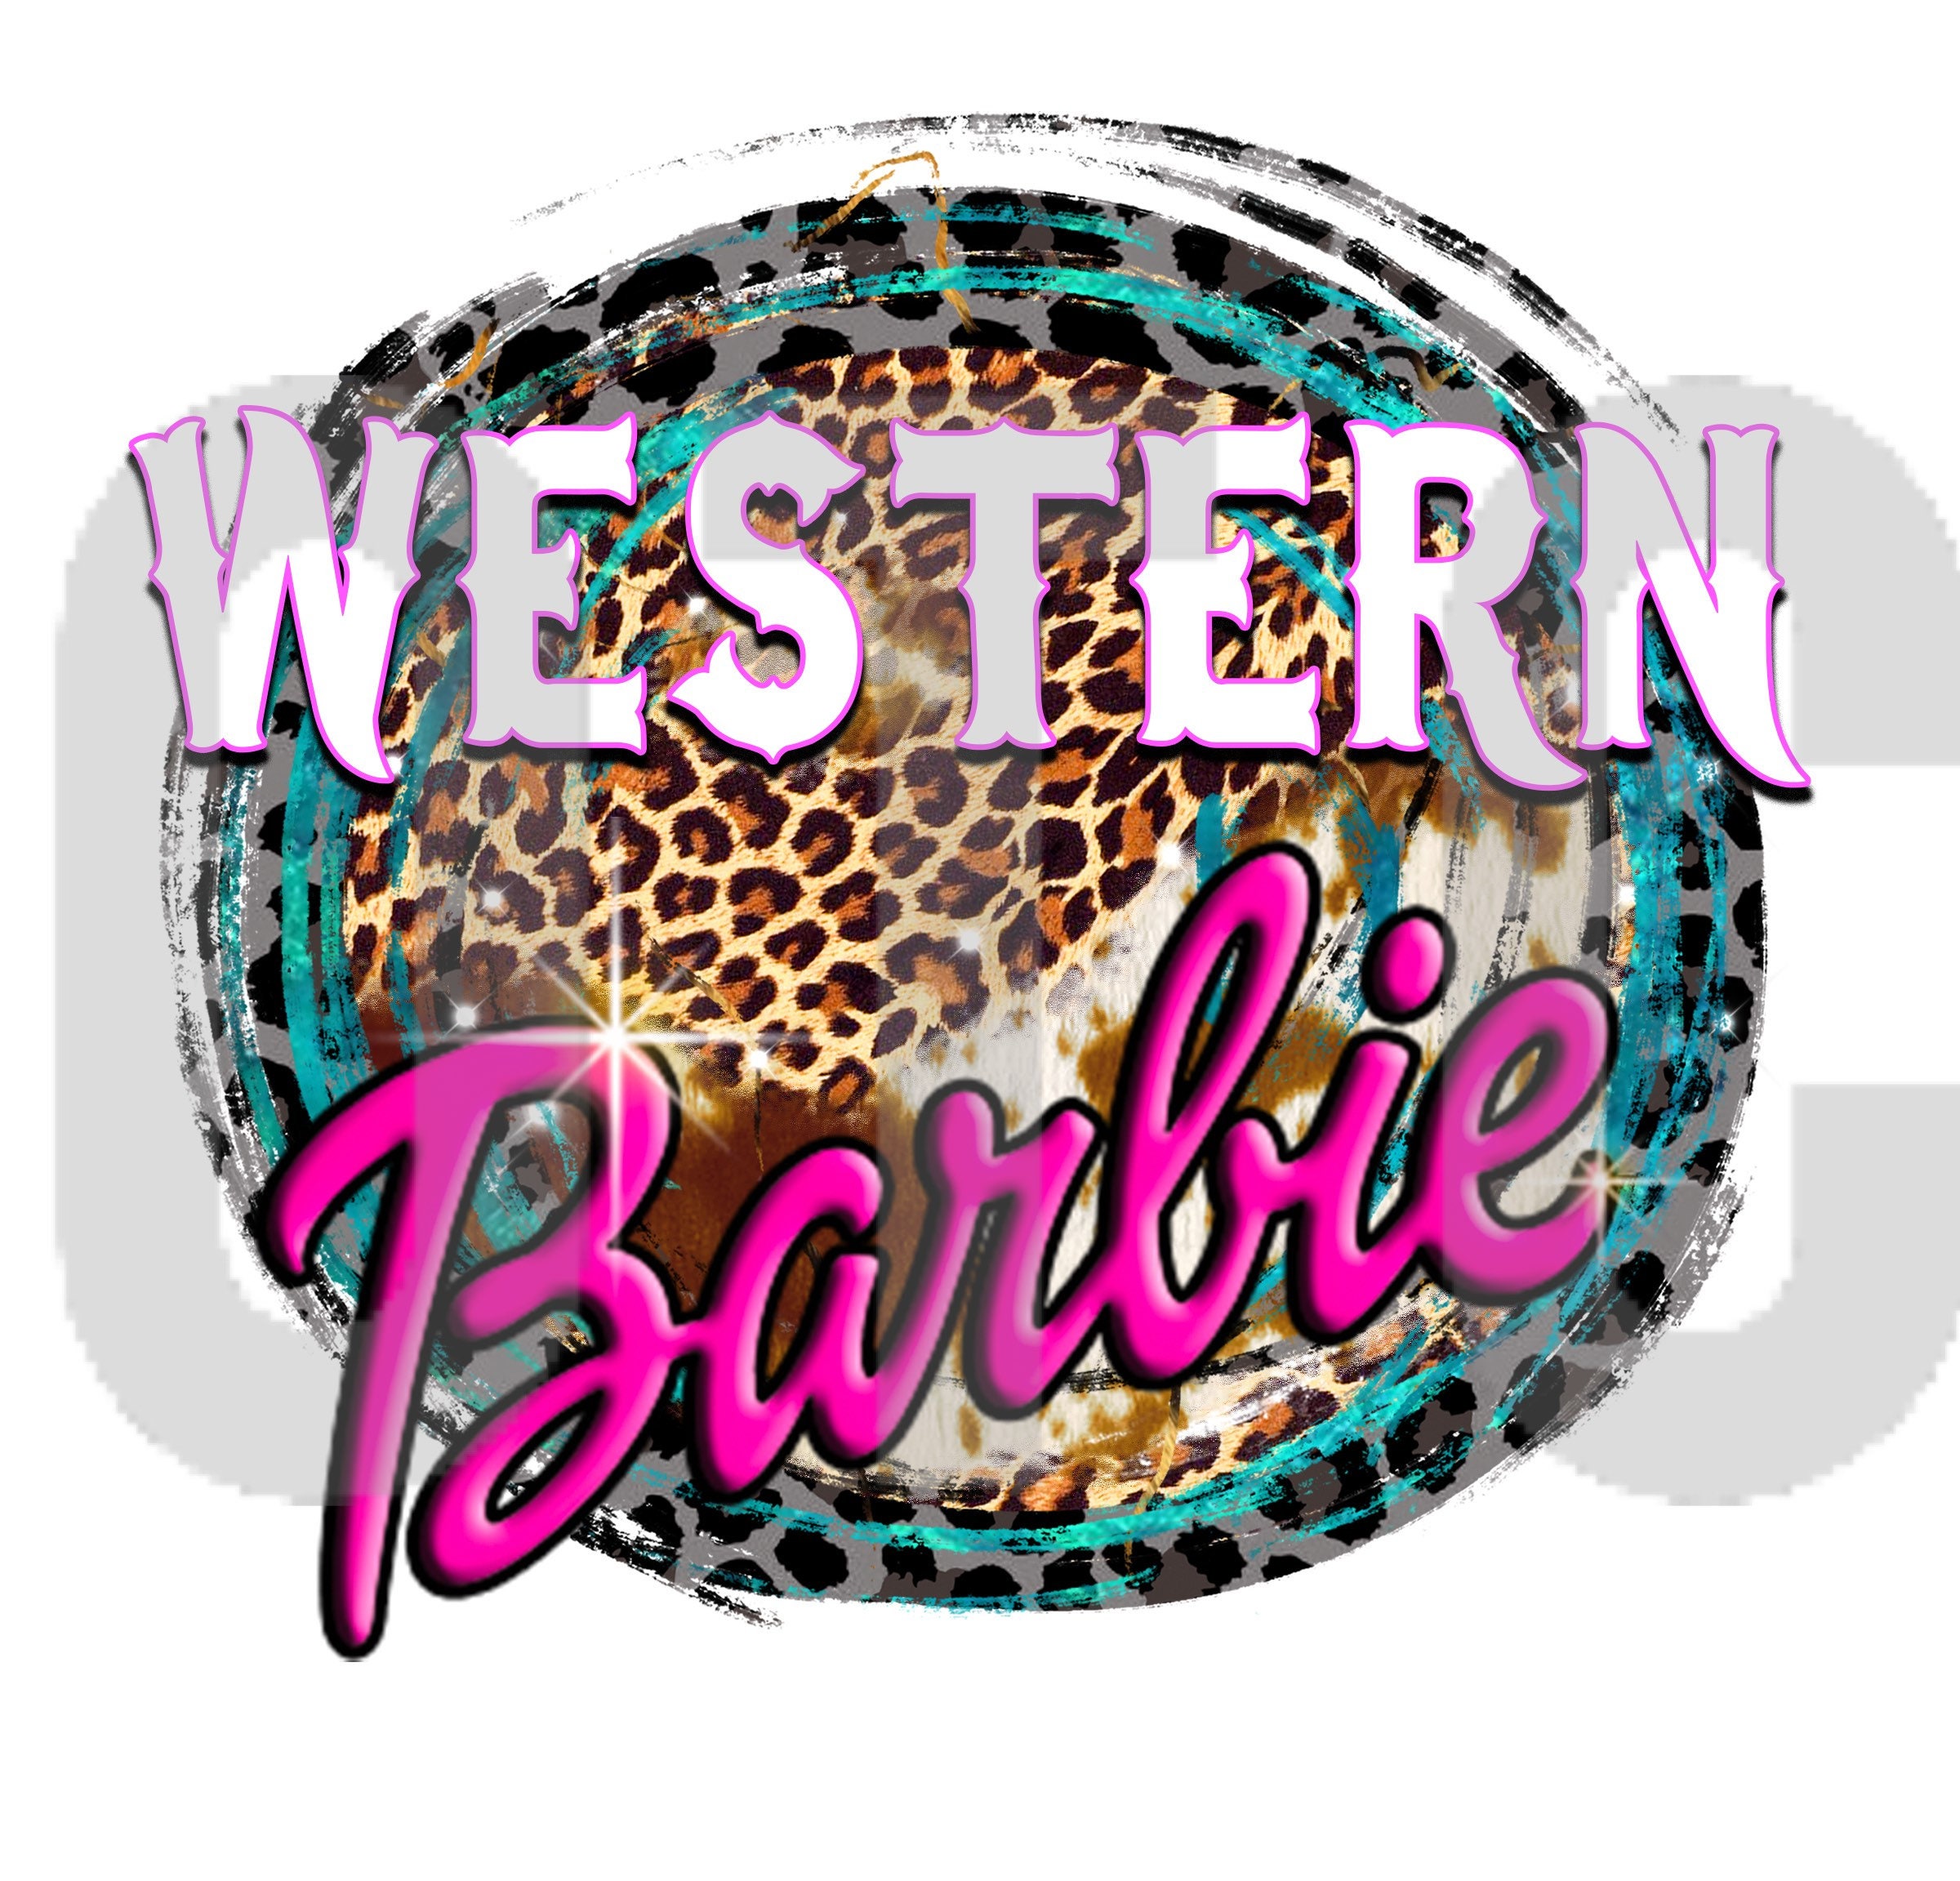 Barbie Logo Iron-on Sticker (heat transfer) – Customeazy